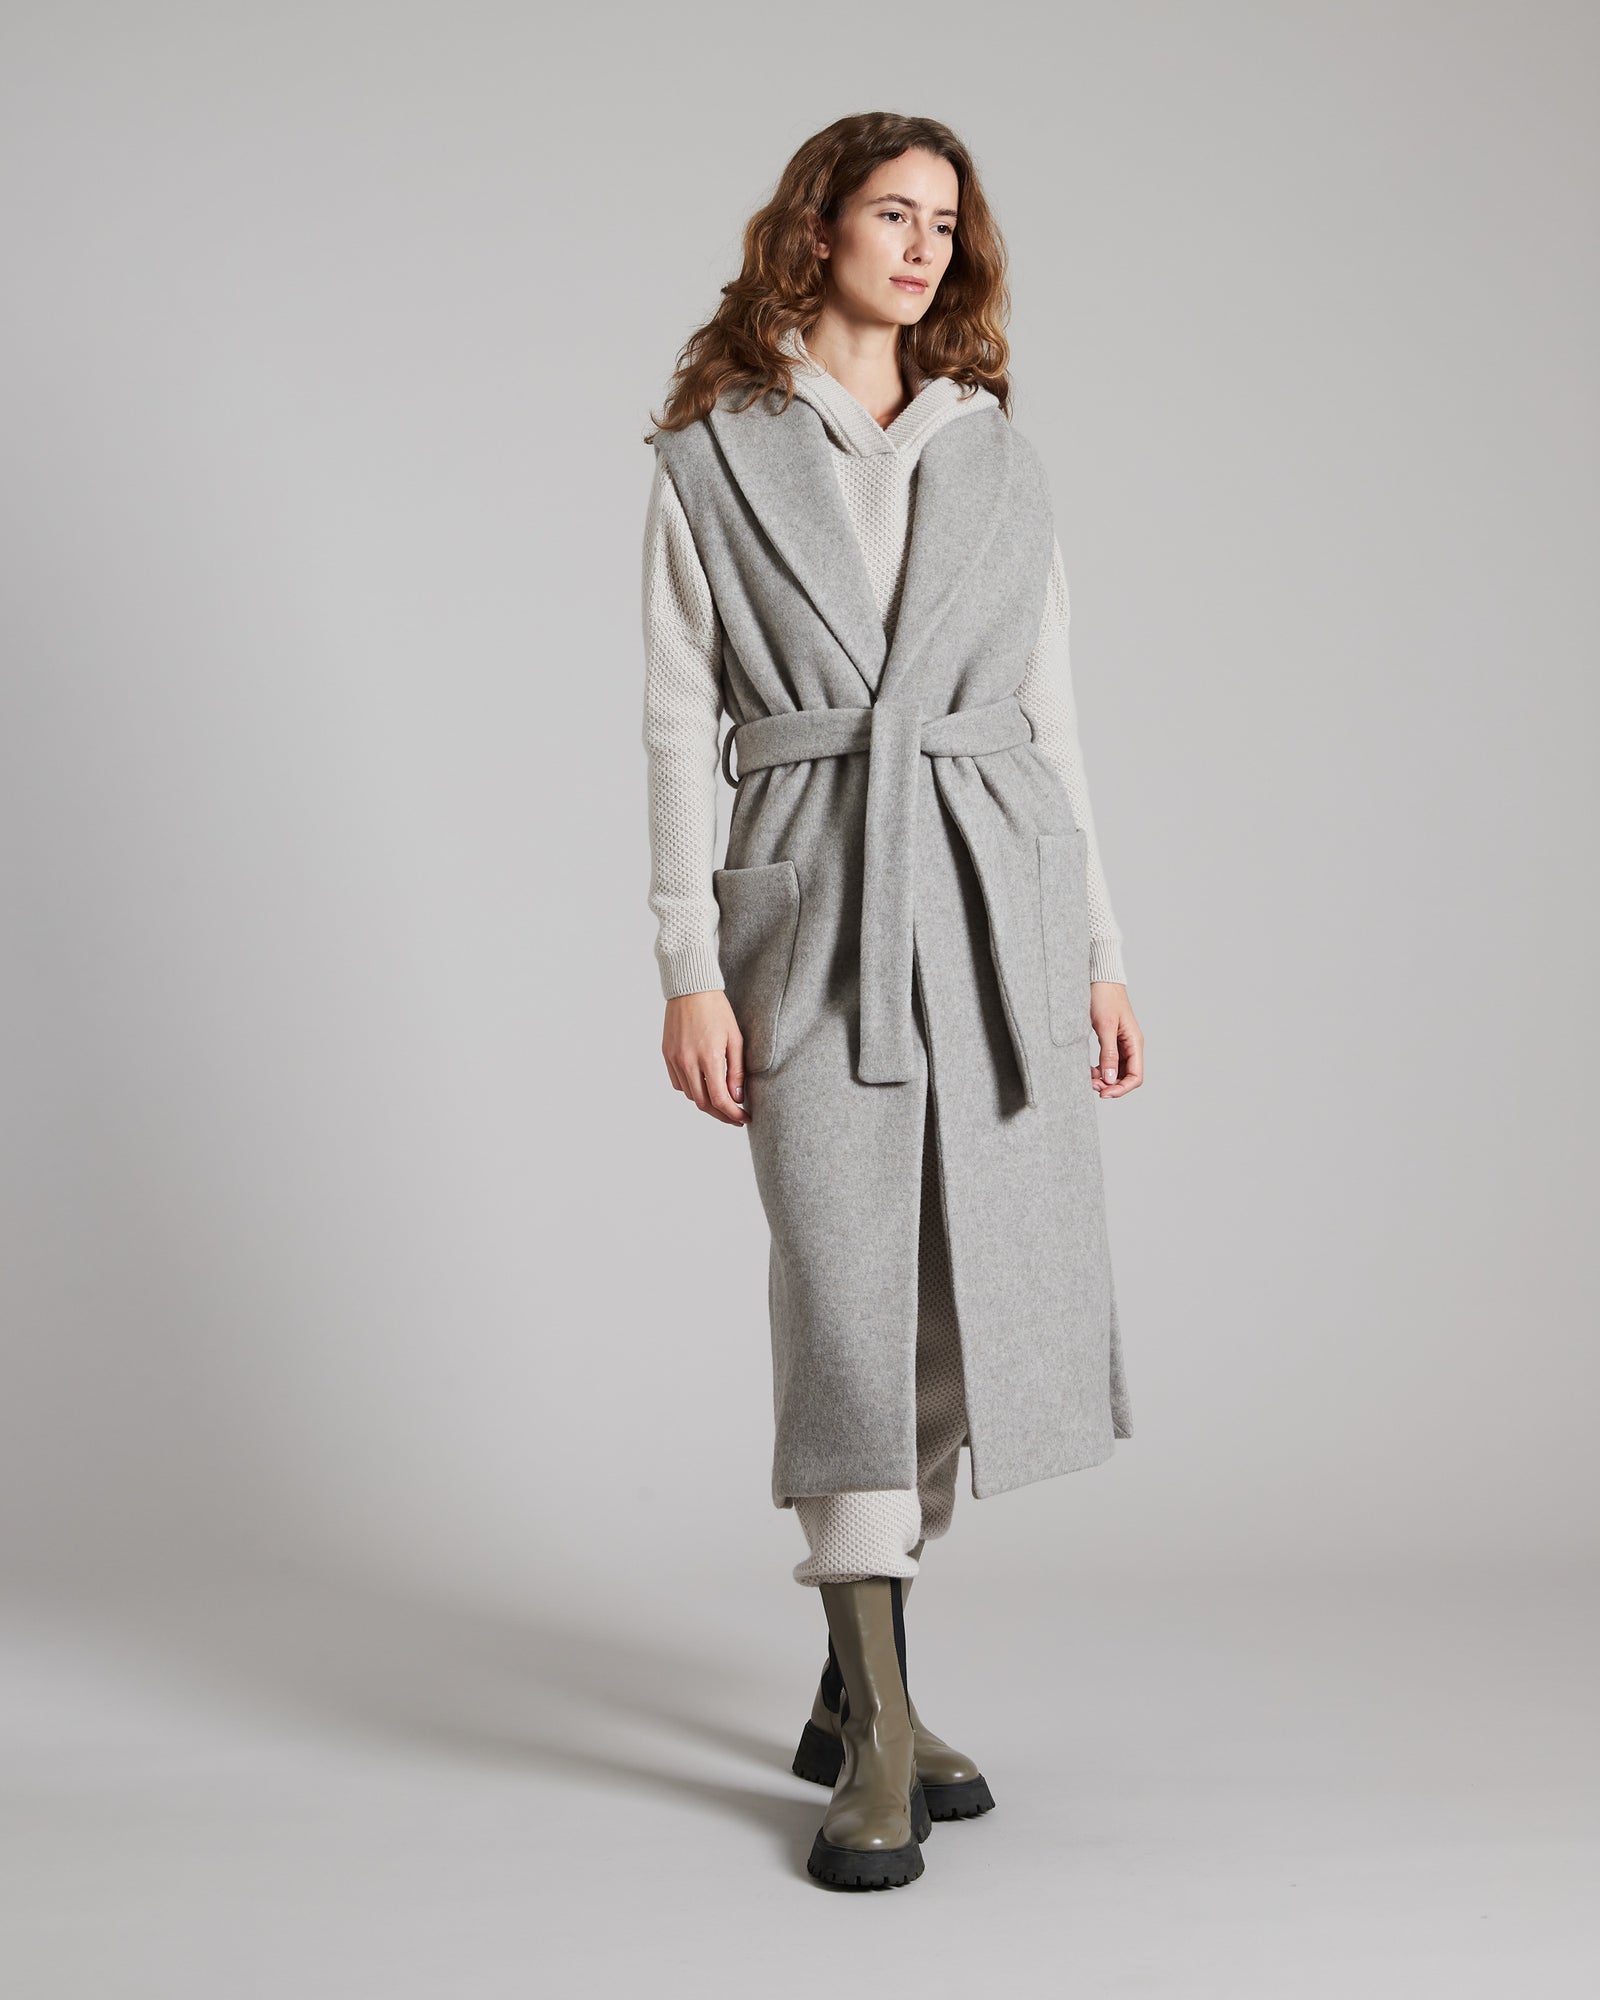 Cashmere fleece sleeveless outerwear